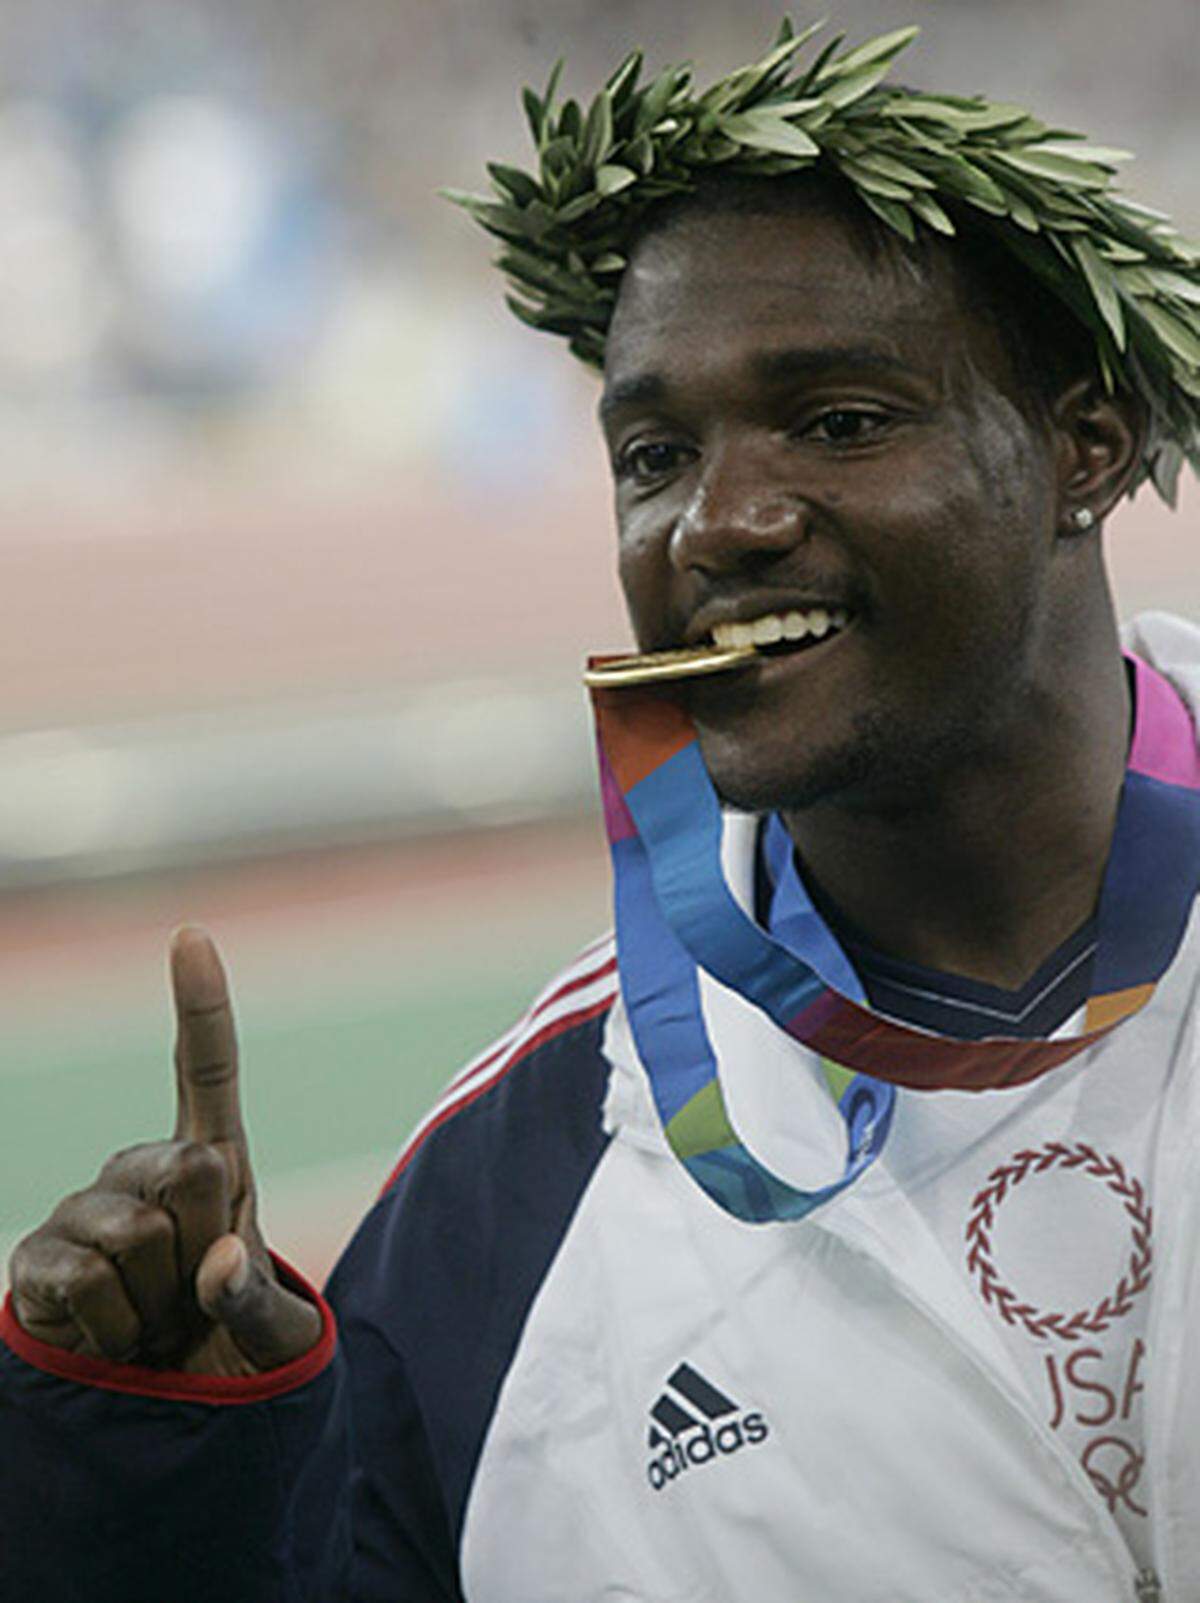 Justin Gatlin, Weltmeister über 100 und 200 m (Helsinki 2005), sowie Olympiasieger über 100 m (Athen 2004): Der US-Amerikaner liefert am 22. April bei einem Staffel-Einsatz in Kansas City einen positiven Dopingtest mit einem zu hohen Testosteron-Wert ab. Der 23-Jährige hatte rund drei Wochen nach dem positiven Dopingtest am 12. Mai beim Grand-Prix-Meeting in Doha (Katar) in 9,77 Sekunden über 100 m den Weltrekord des Jamaikaners Asafa Powell eingestellt. Gatlin war bereits 2002 als 19-Jähriger in einer Doping-Probe hängen geblieben. Damals wurde er vom Weltverband IAAF mit einer zweijährigen Sperre belegt, die auf ein Jahr reduziert wurde.